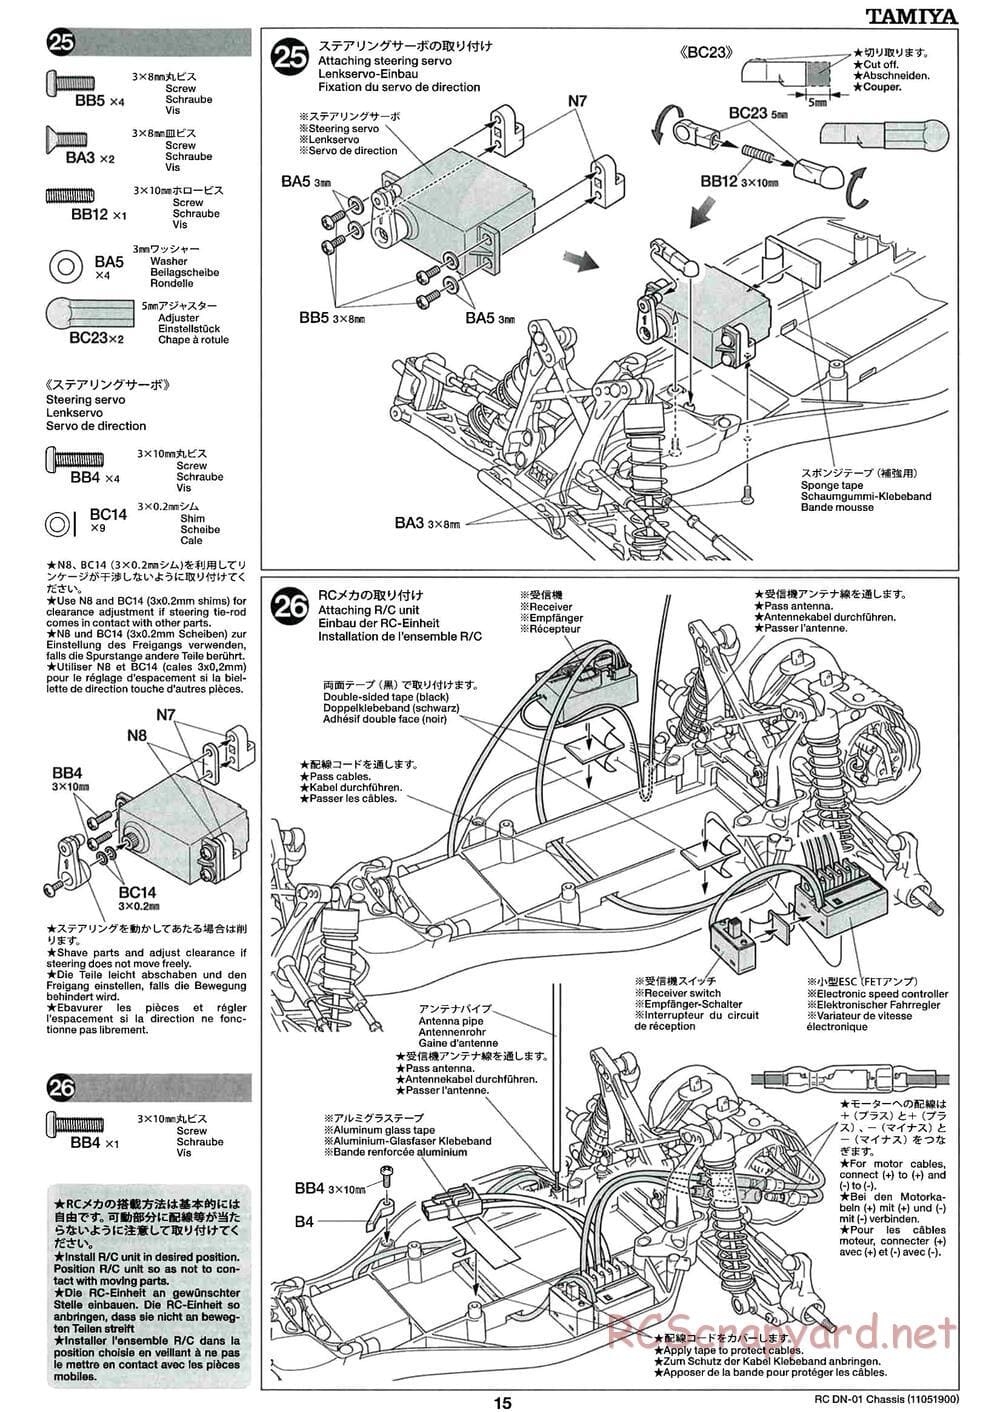 Tamiya - DN-01 Chassis - Manual - Page 15